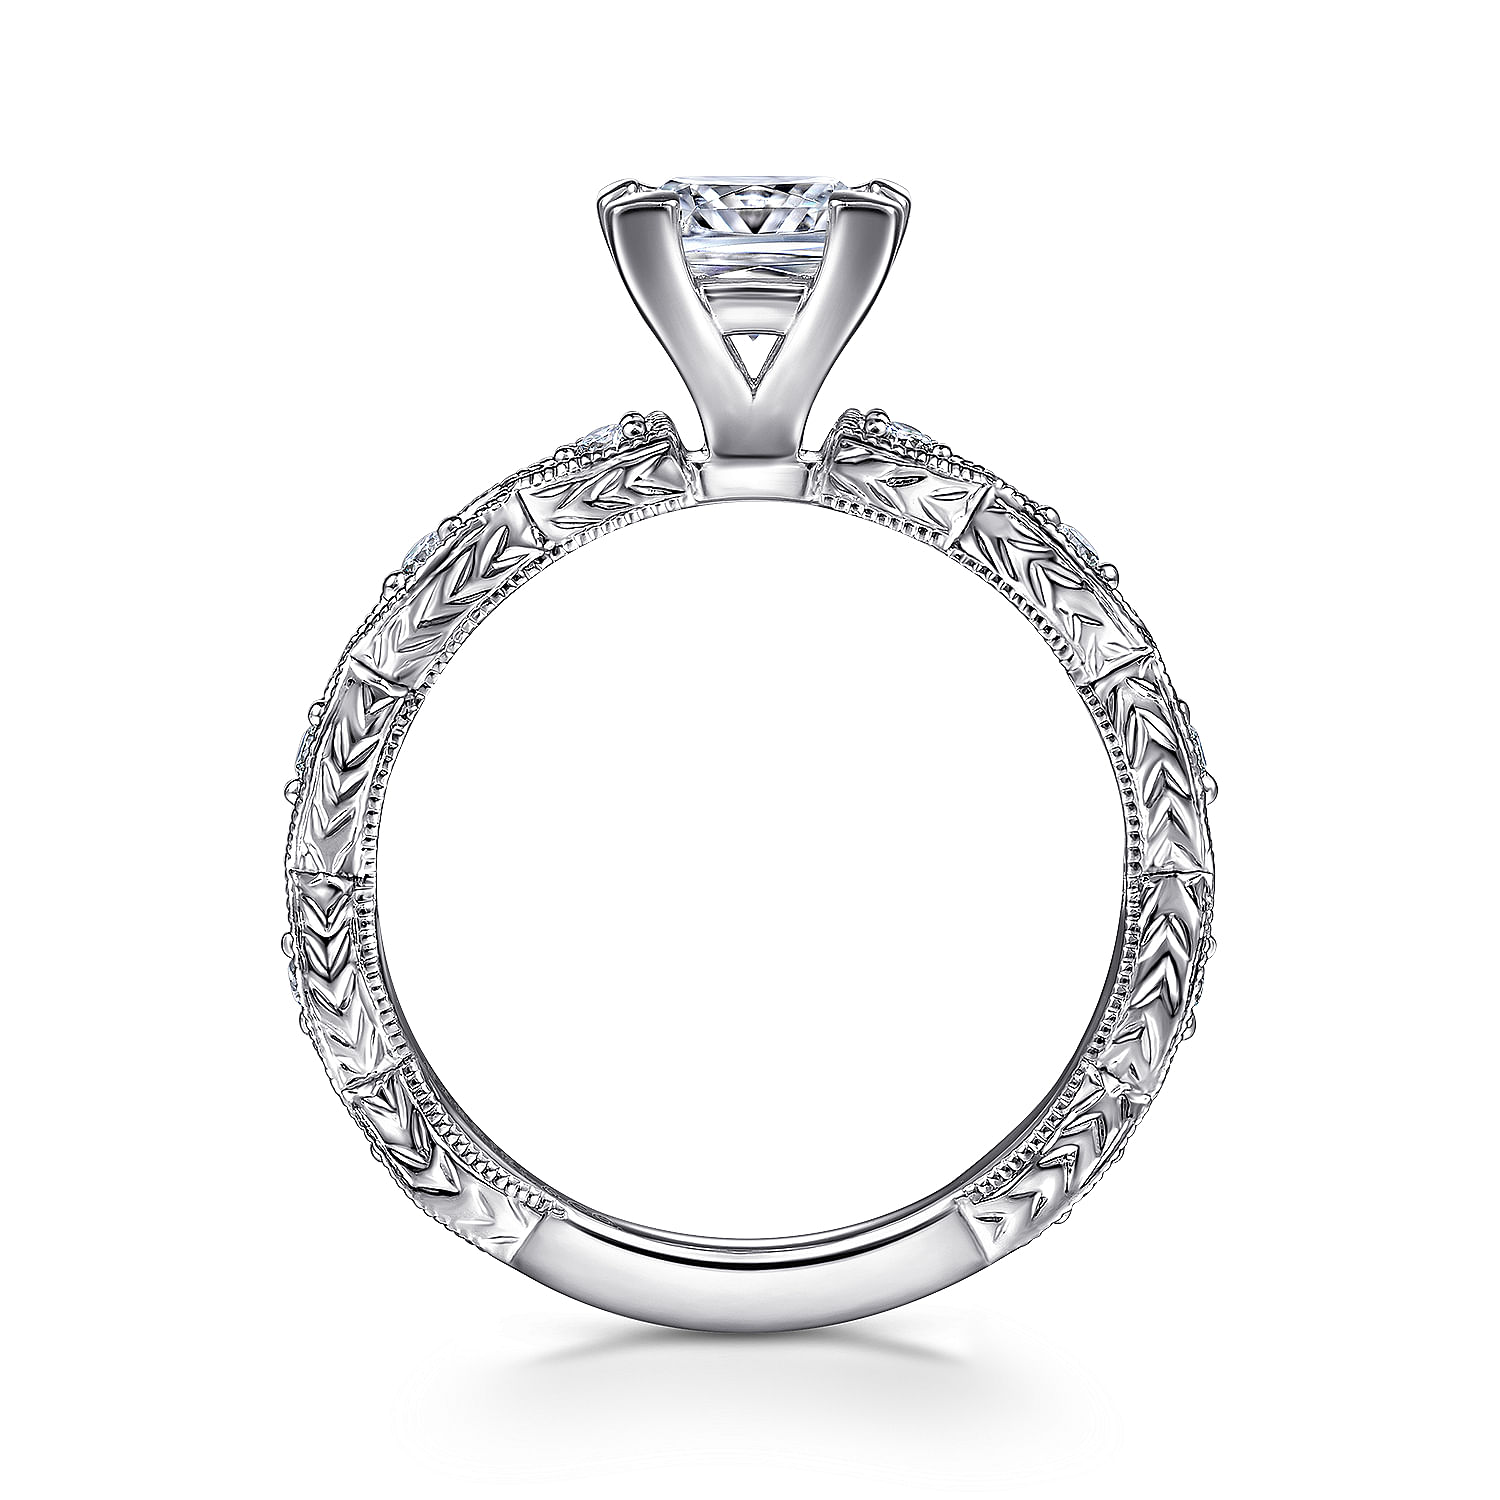 Sadie - 14K White Gold Princess Cut Diamond Engagement Ring - 0.12 ct - Shot 2